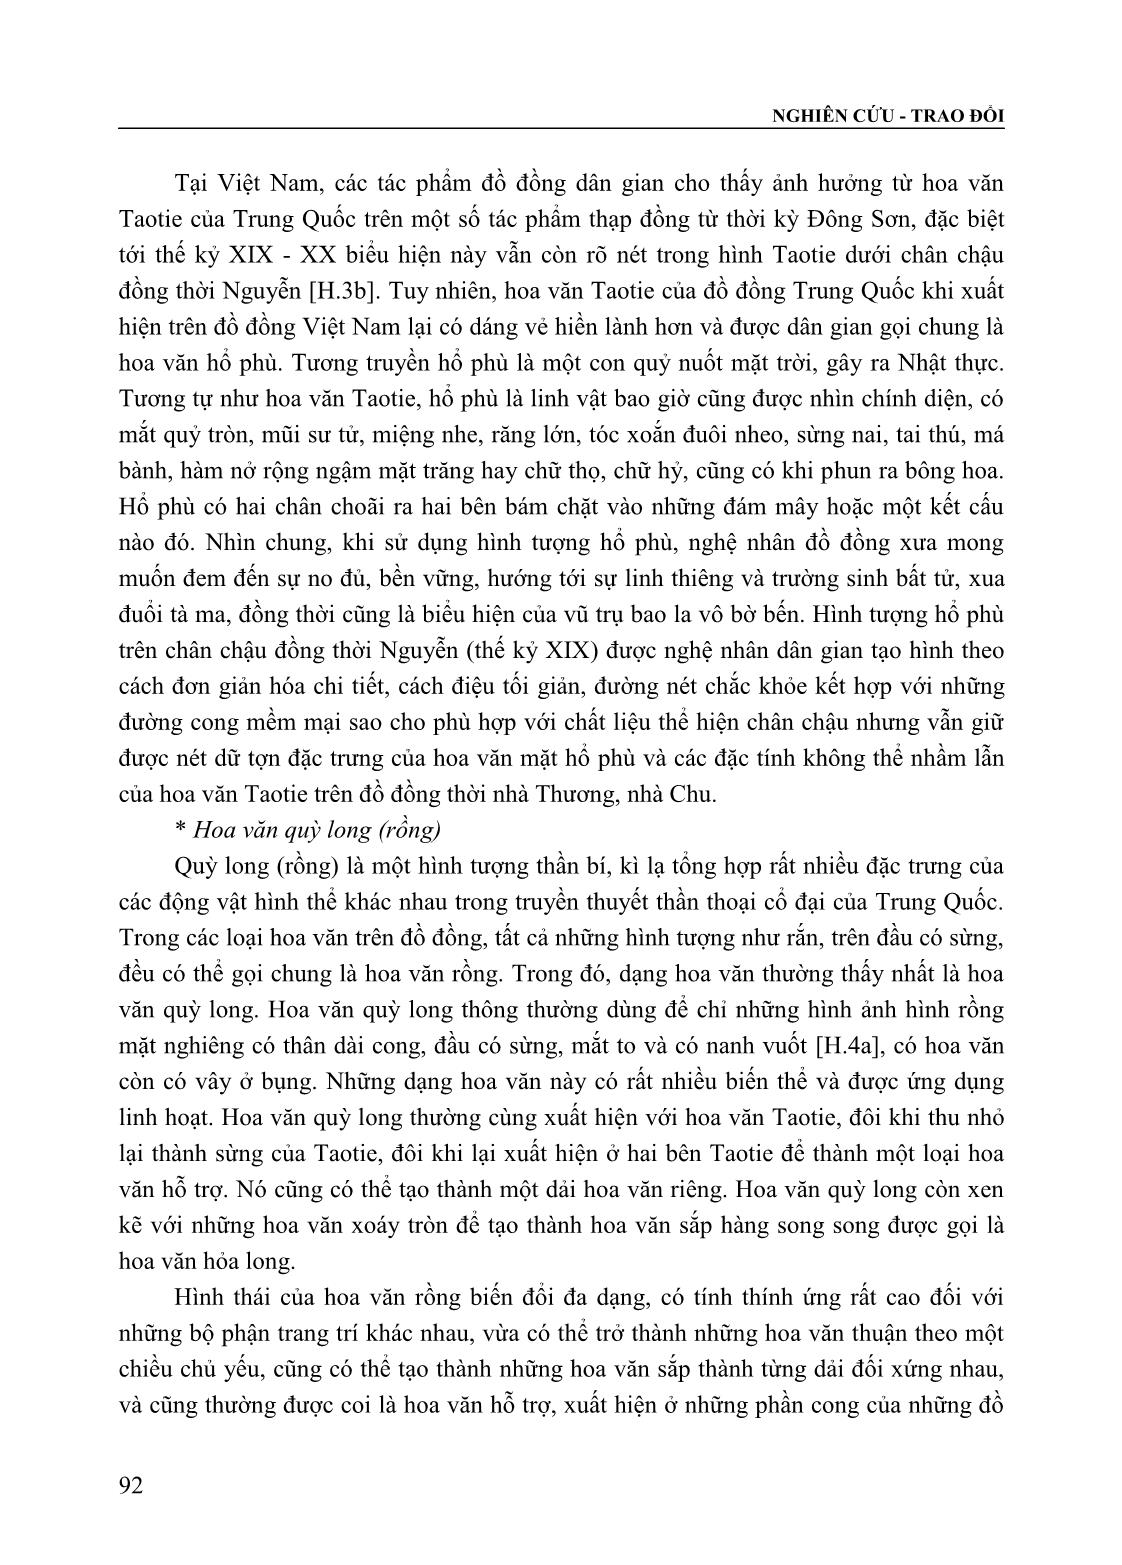 Tạo hình đồ đồng dân gian Việt Nam thời Nguyễn (Thế kỷ XIX - XX) trong bối cảnh giao lưu và tiếp biến với đồ đồng Trung Quốc trang 3